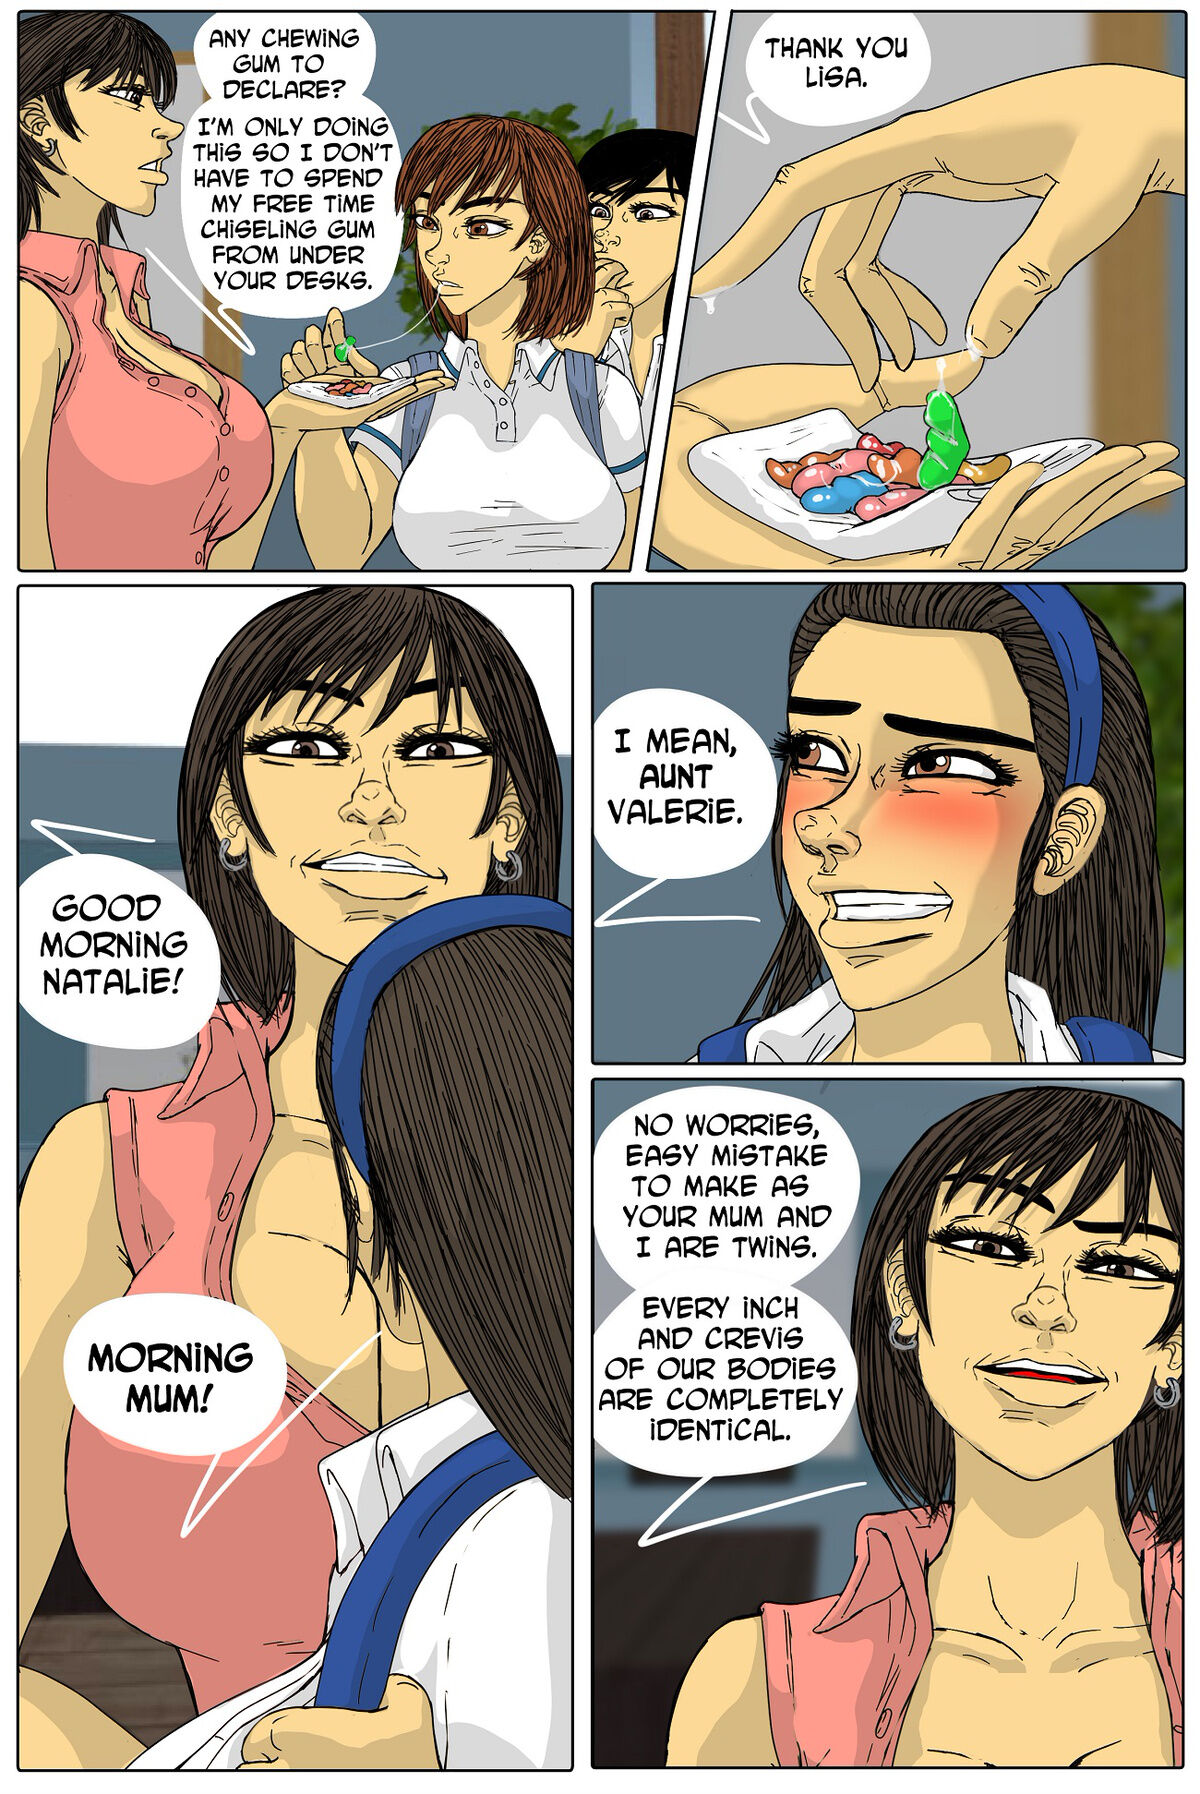 Incestral Affairs Manga 4 - Page 7 - HentaiRox